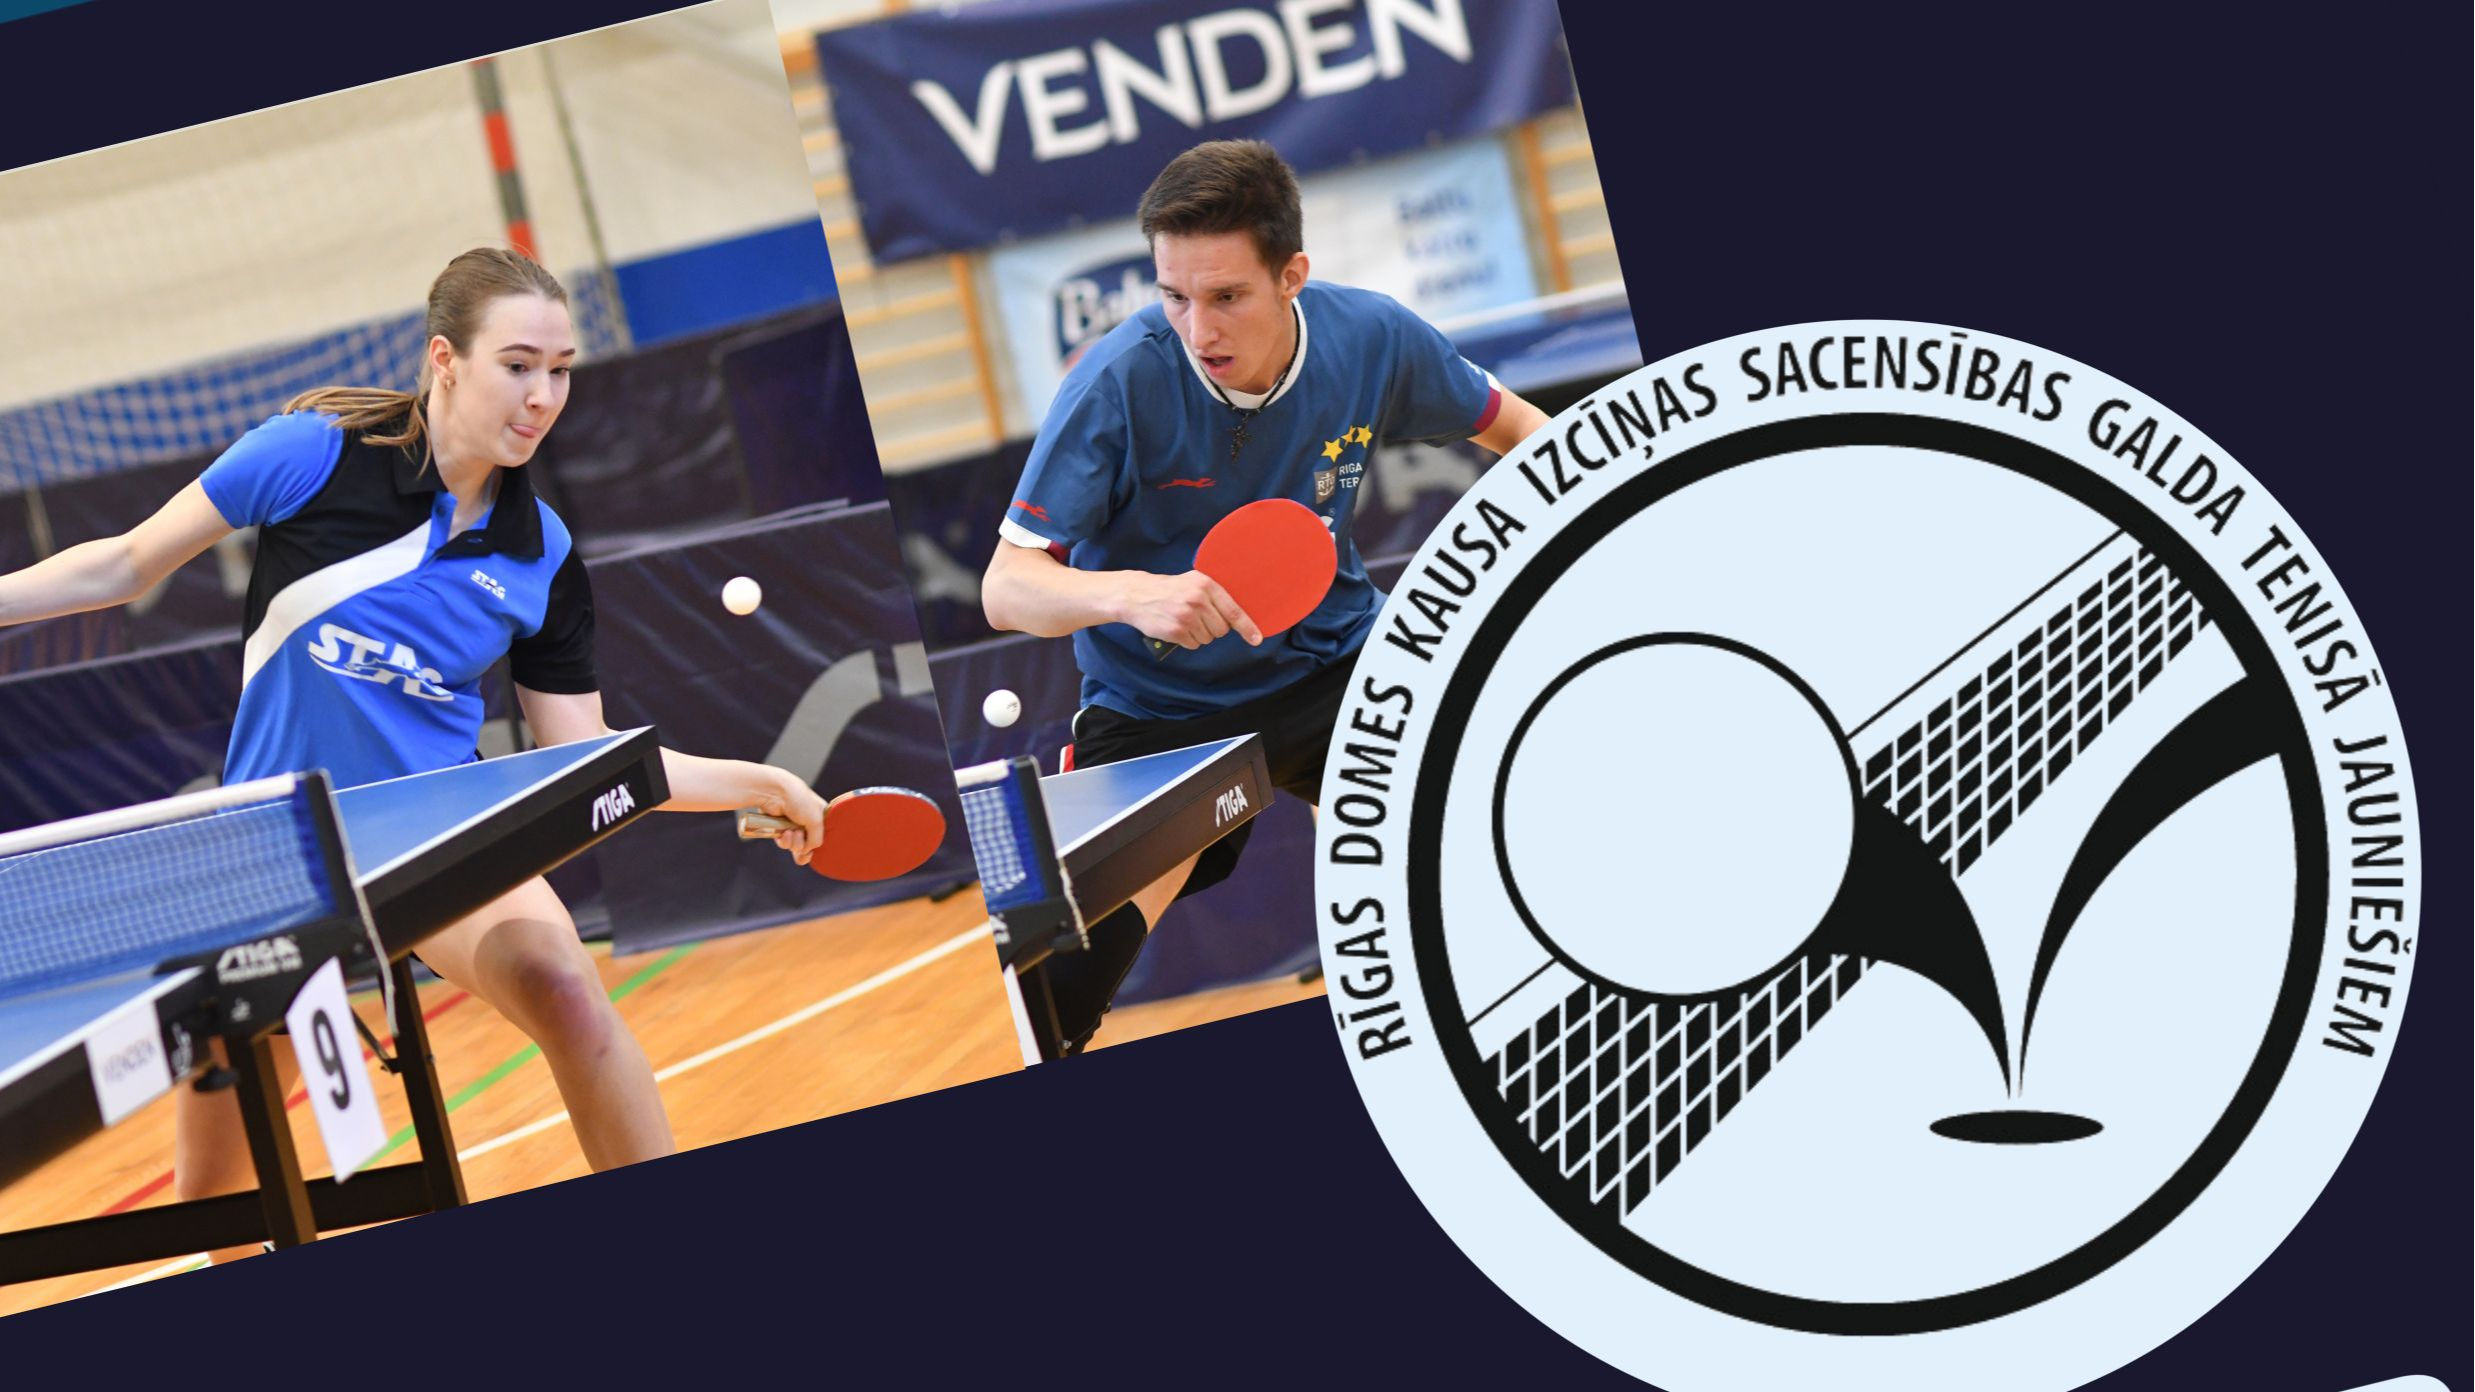 Rīgā notiks starptautiskas sacensības galda tenisā jauniešiem